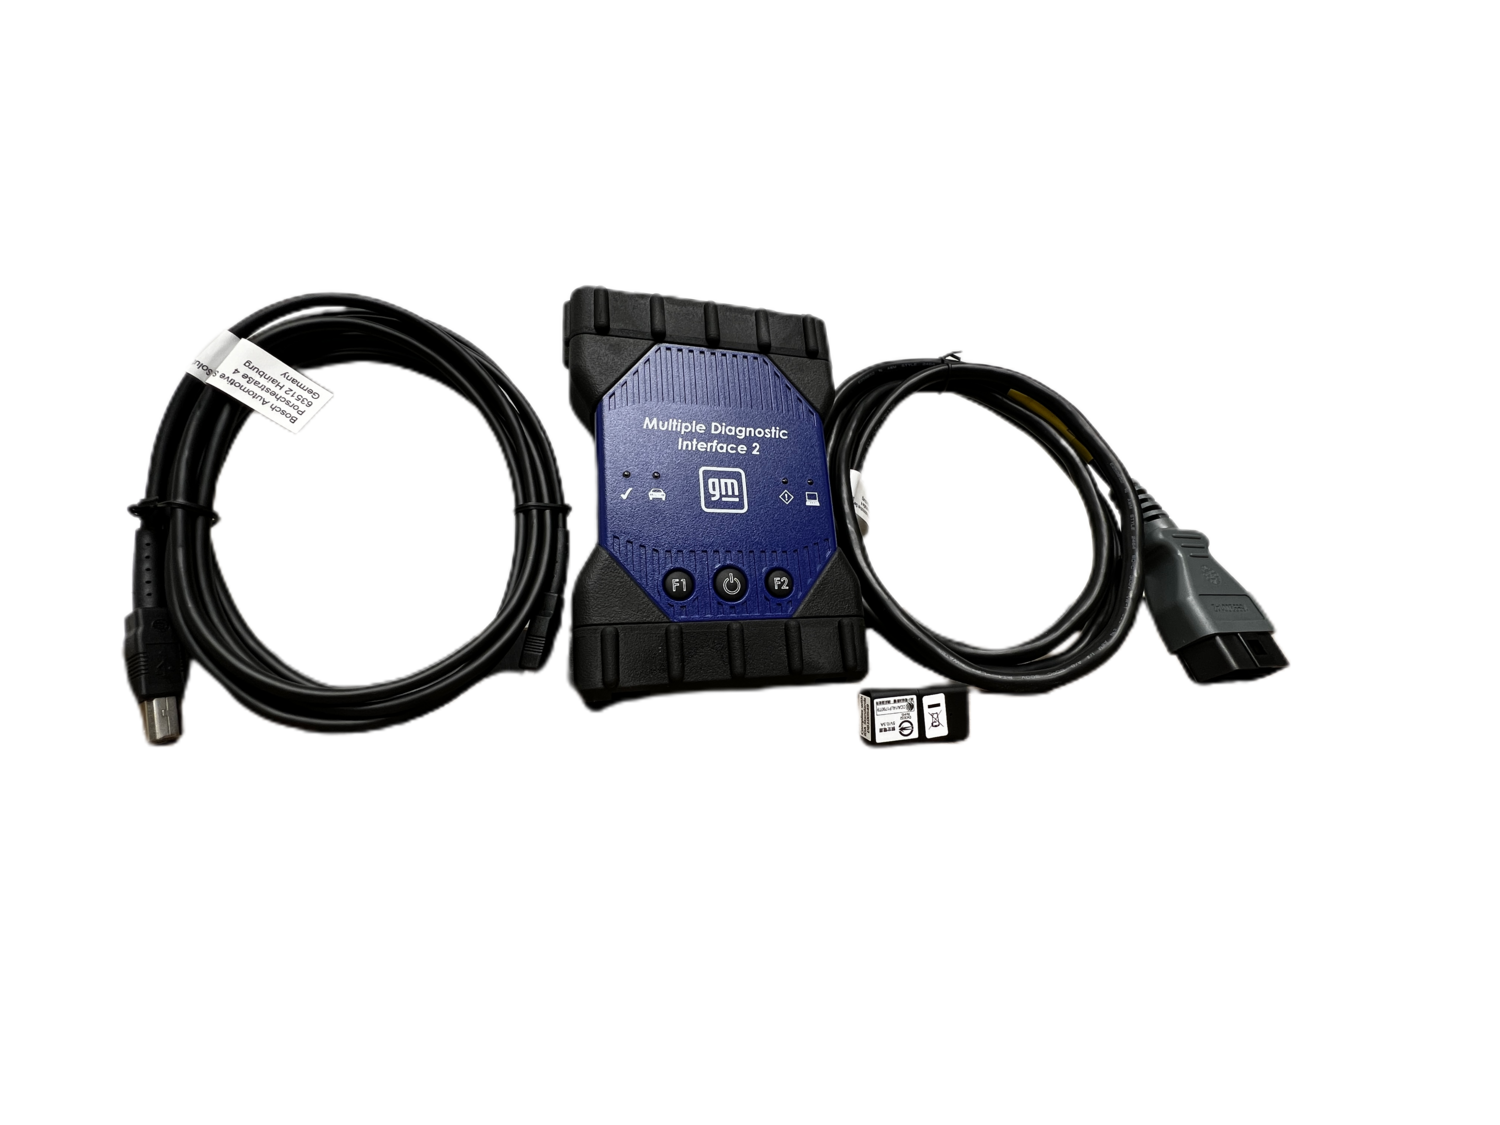 GM MDI 2 EL-52100-AM Adapter Kit from Bosch